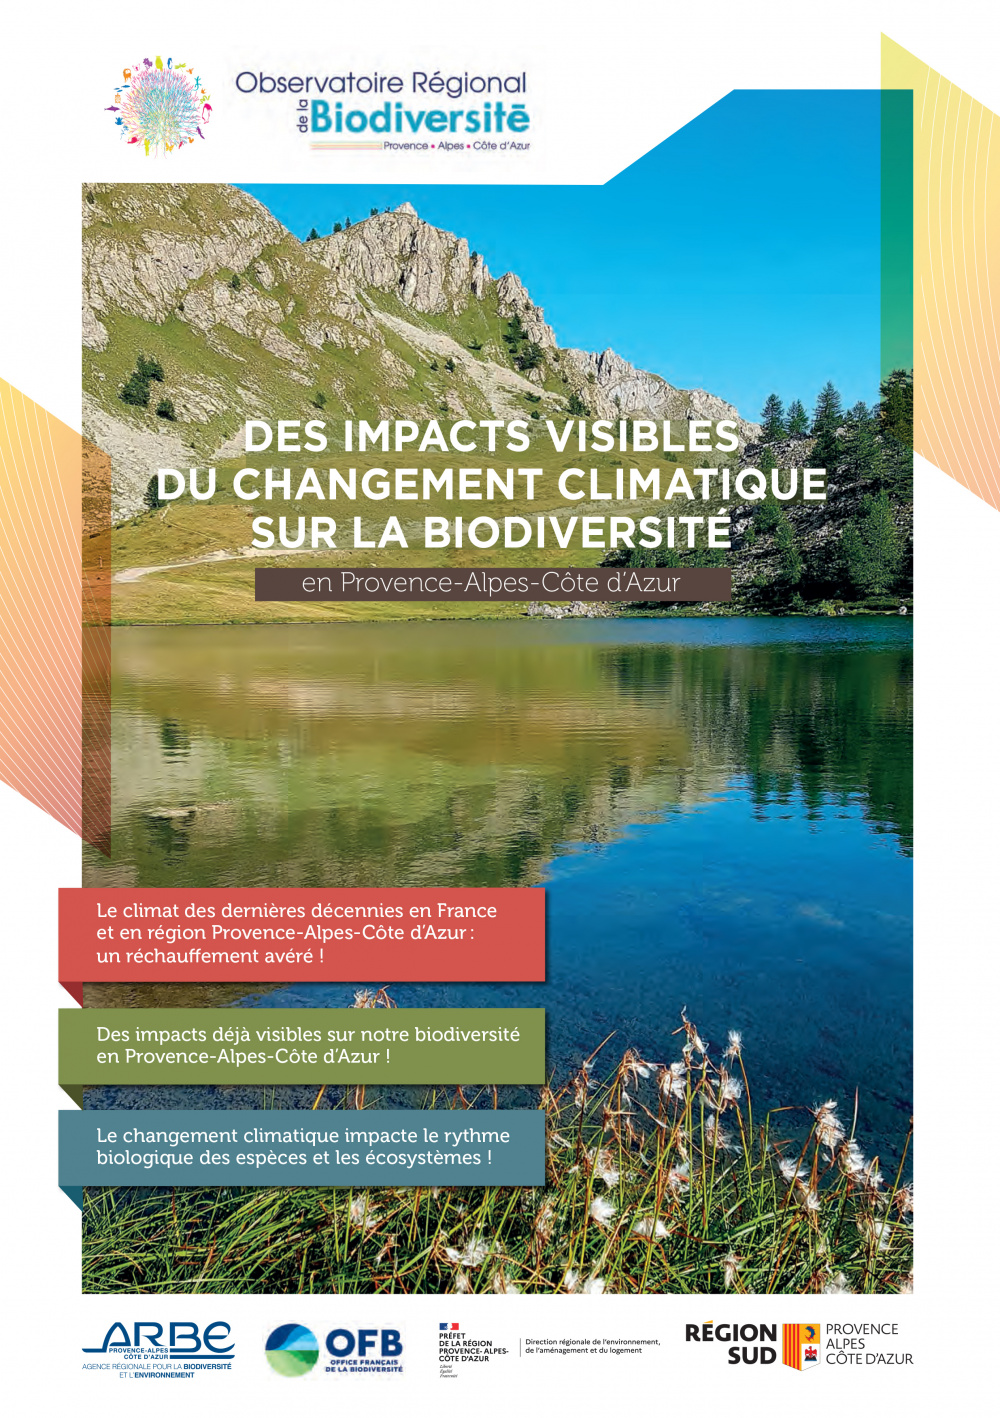 Des impacts visibles du changement climatique sur la biodiversité en Provence-Alpes-Côte d'Azur